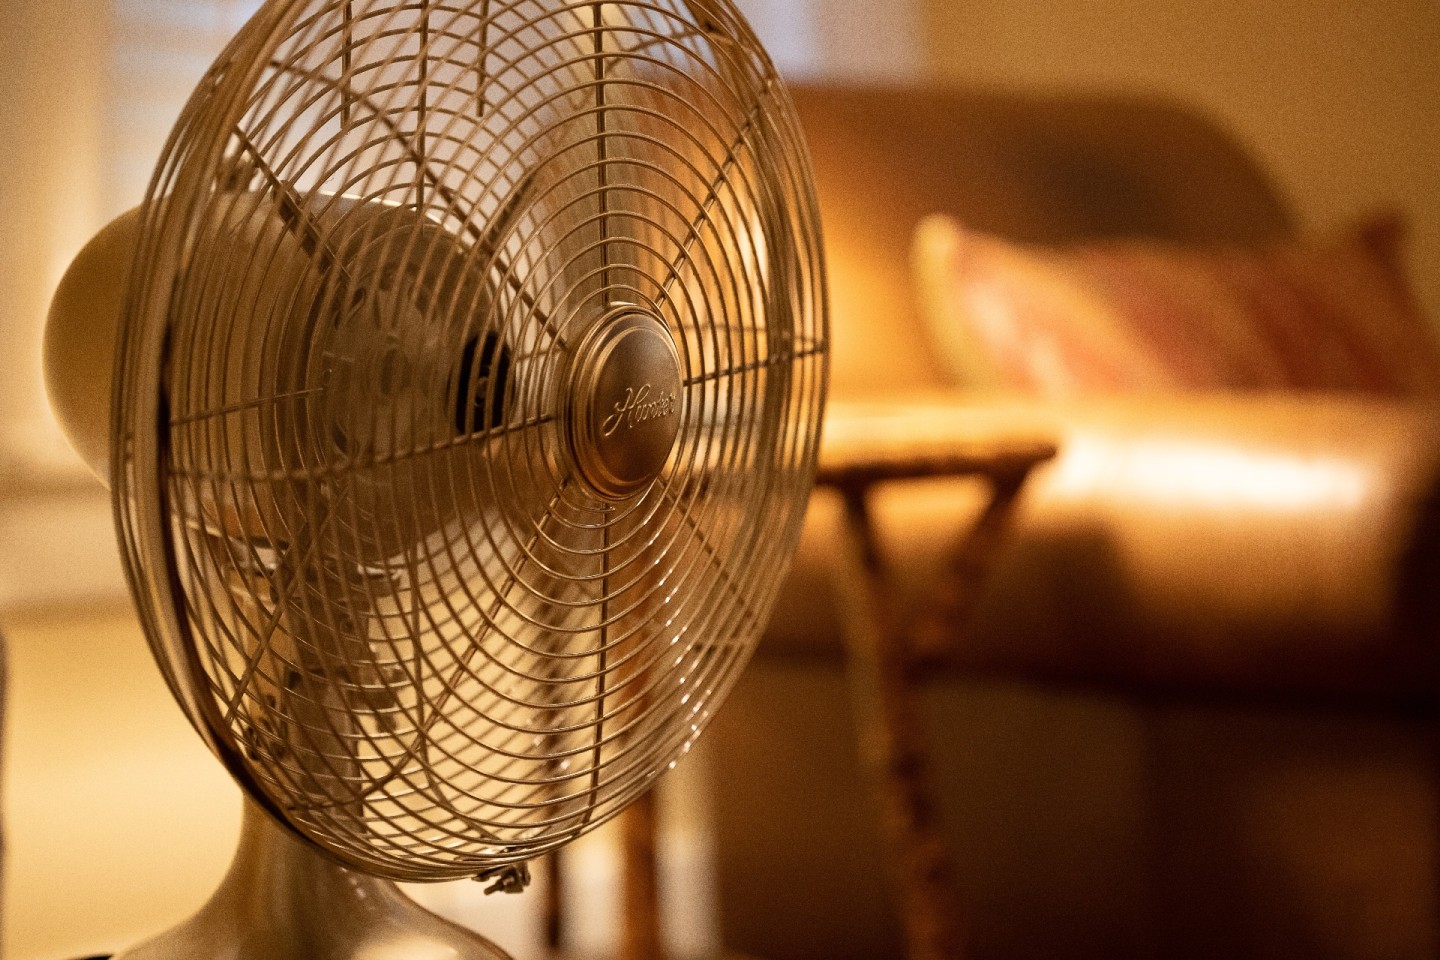 Вентилятор в помещении с температурой выше 35 °C будет только усиливать перегрев